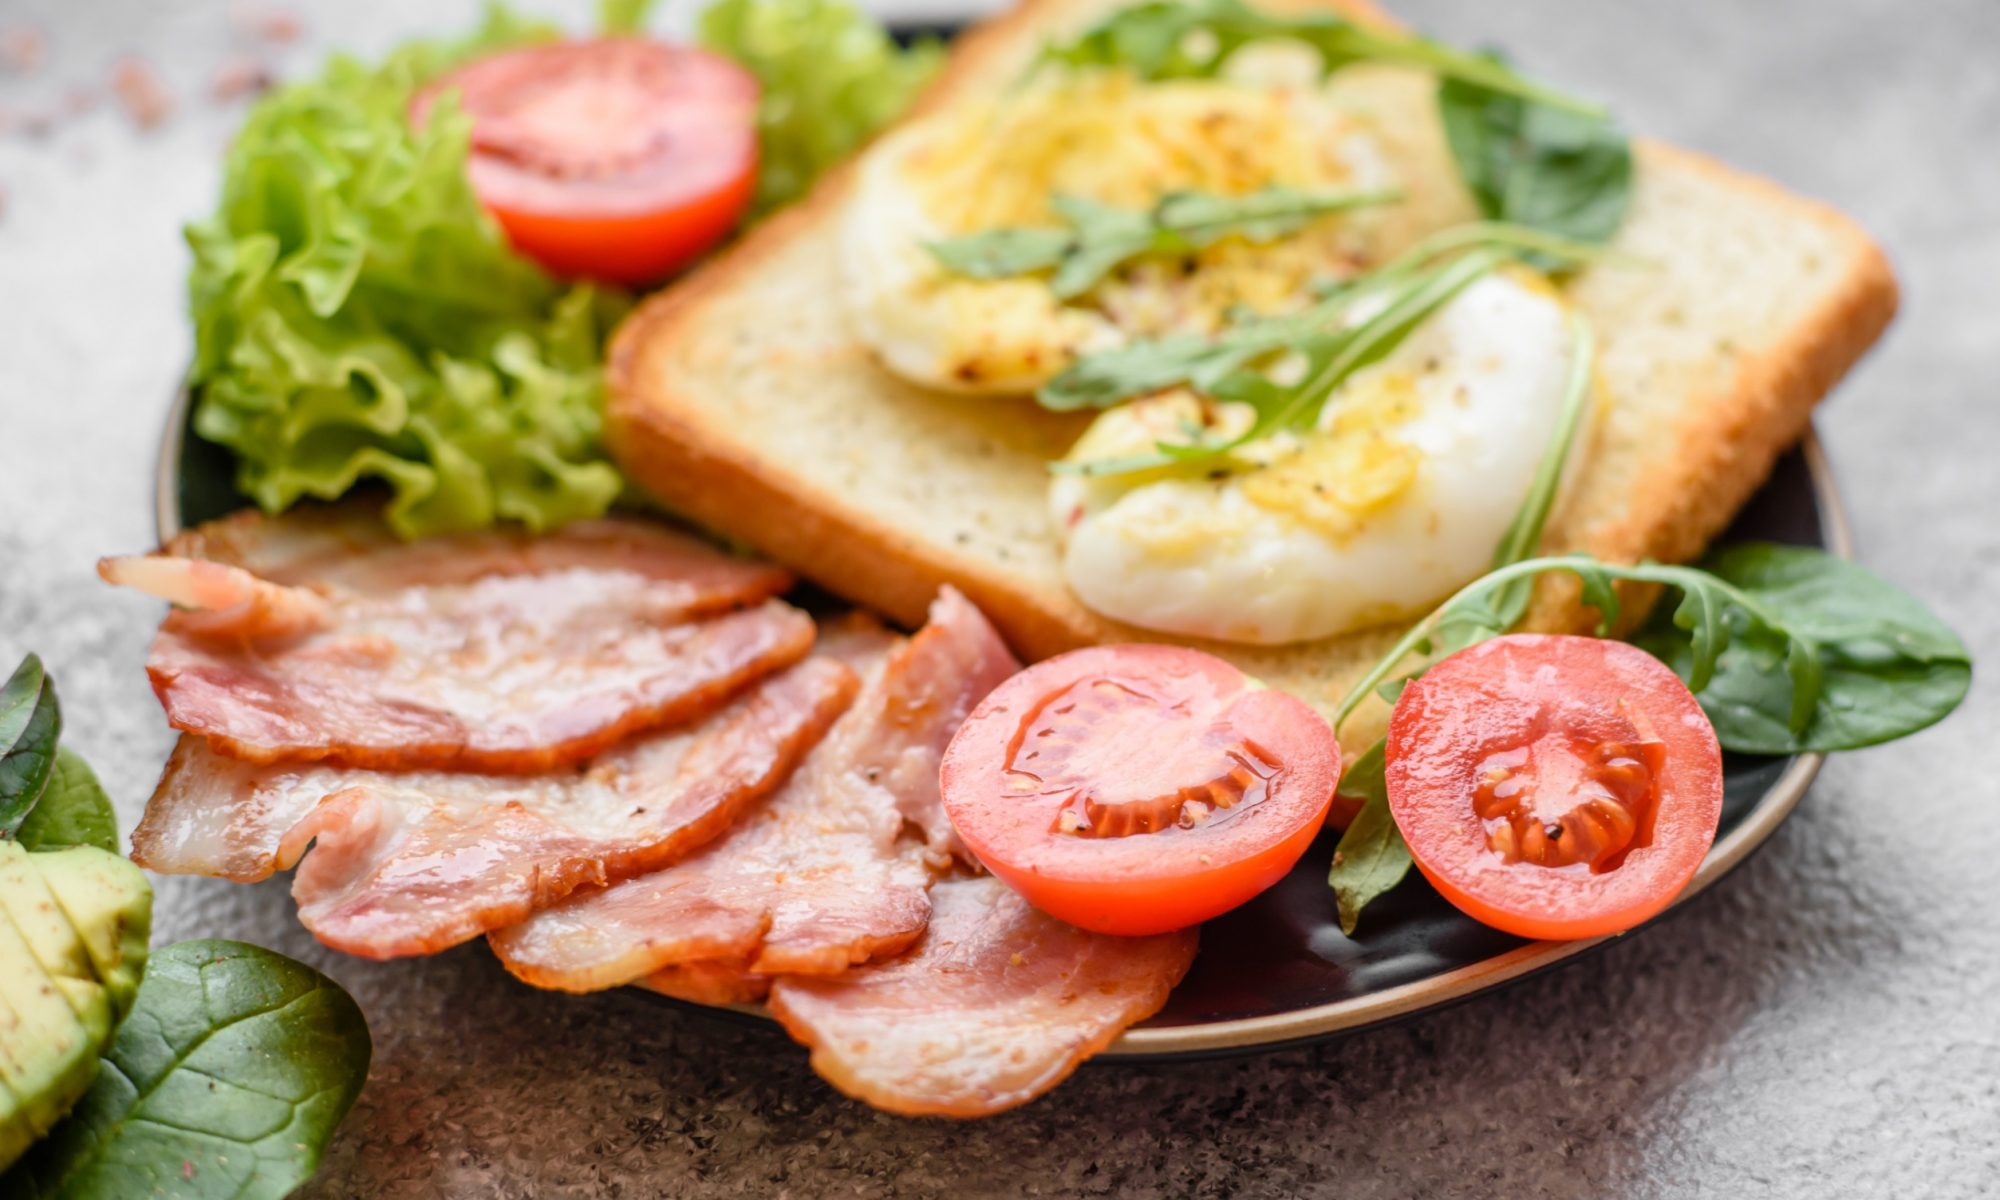 Бутерброды с яйцом и колбасой на сковороде